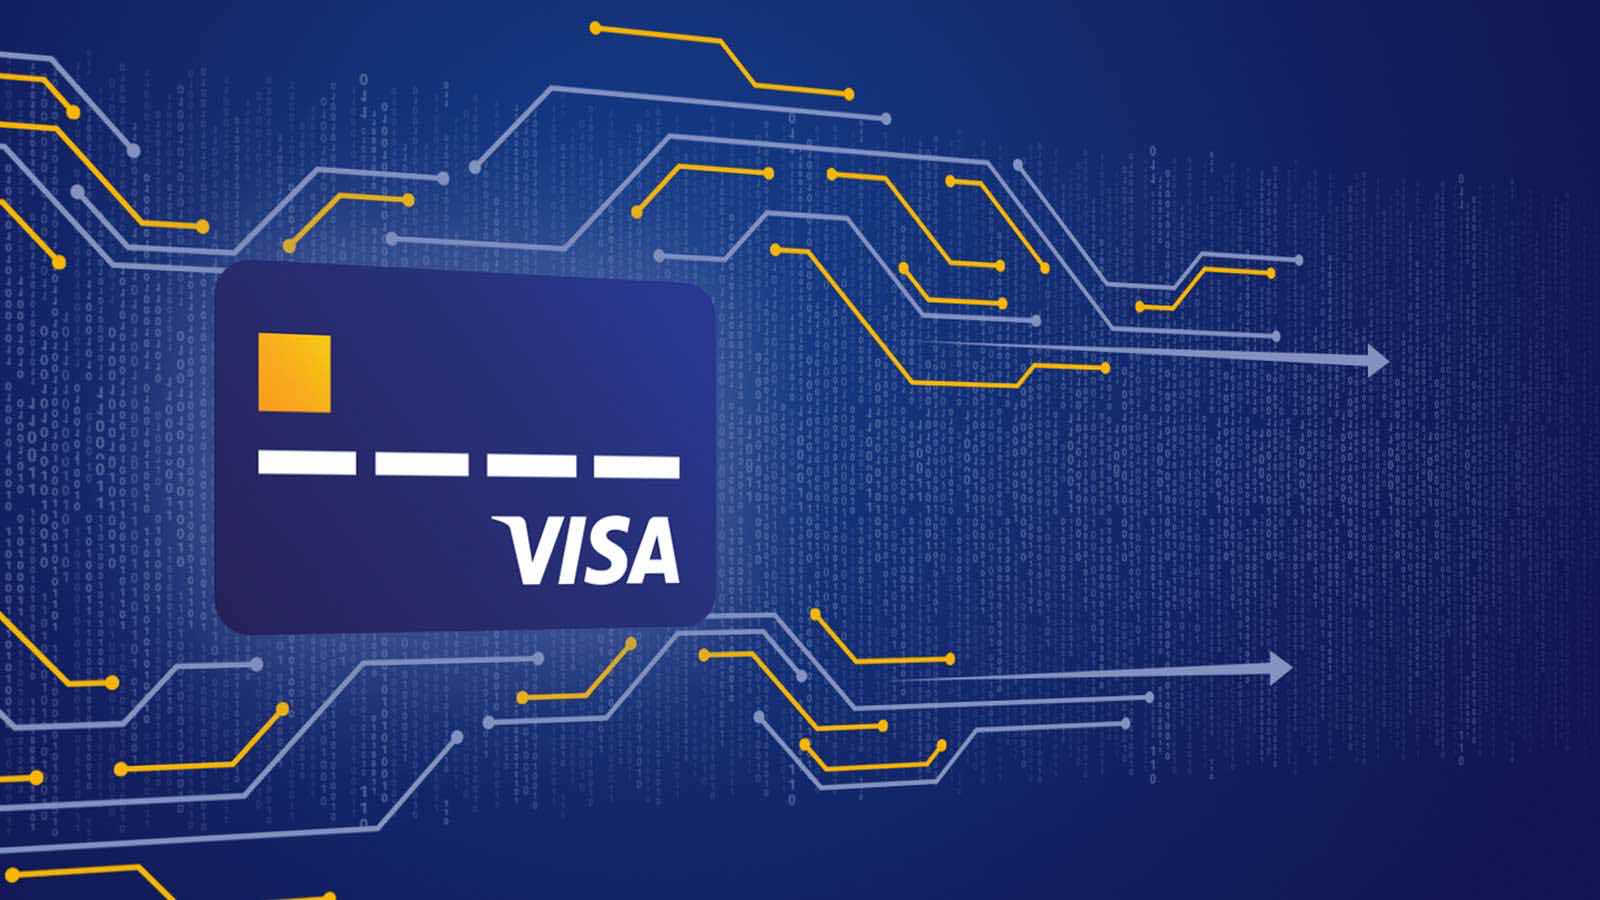 Visa card against blue background.